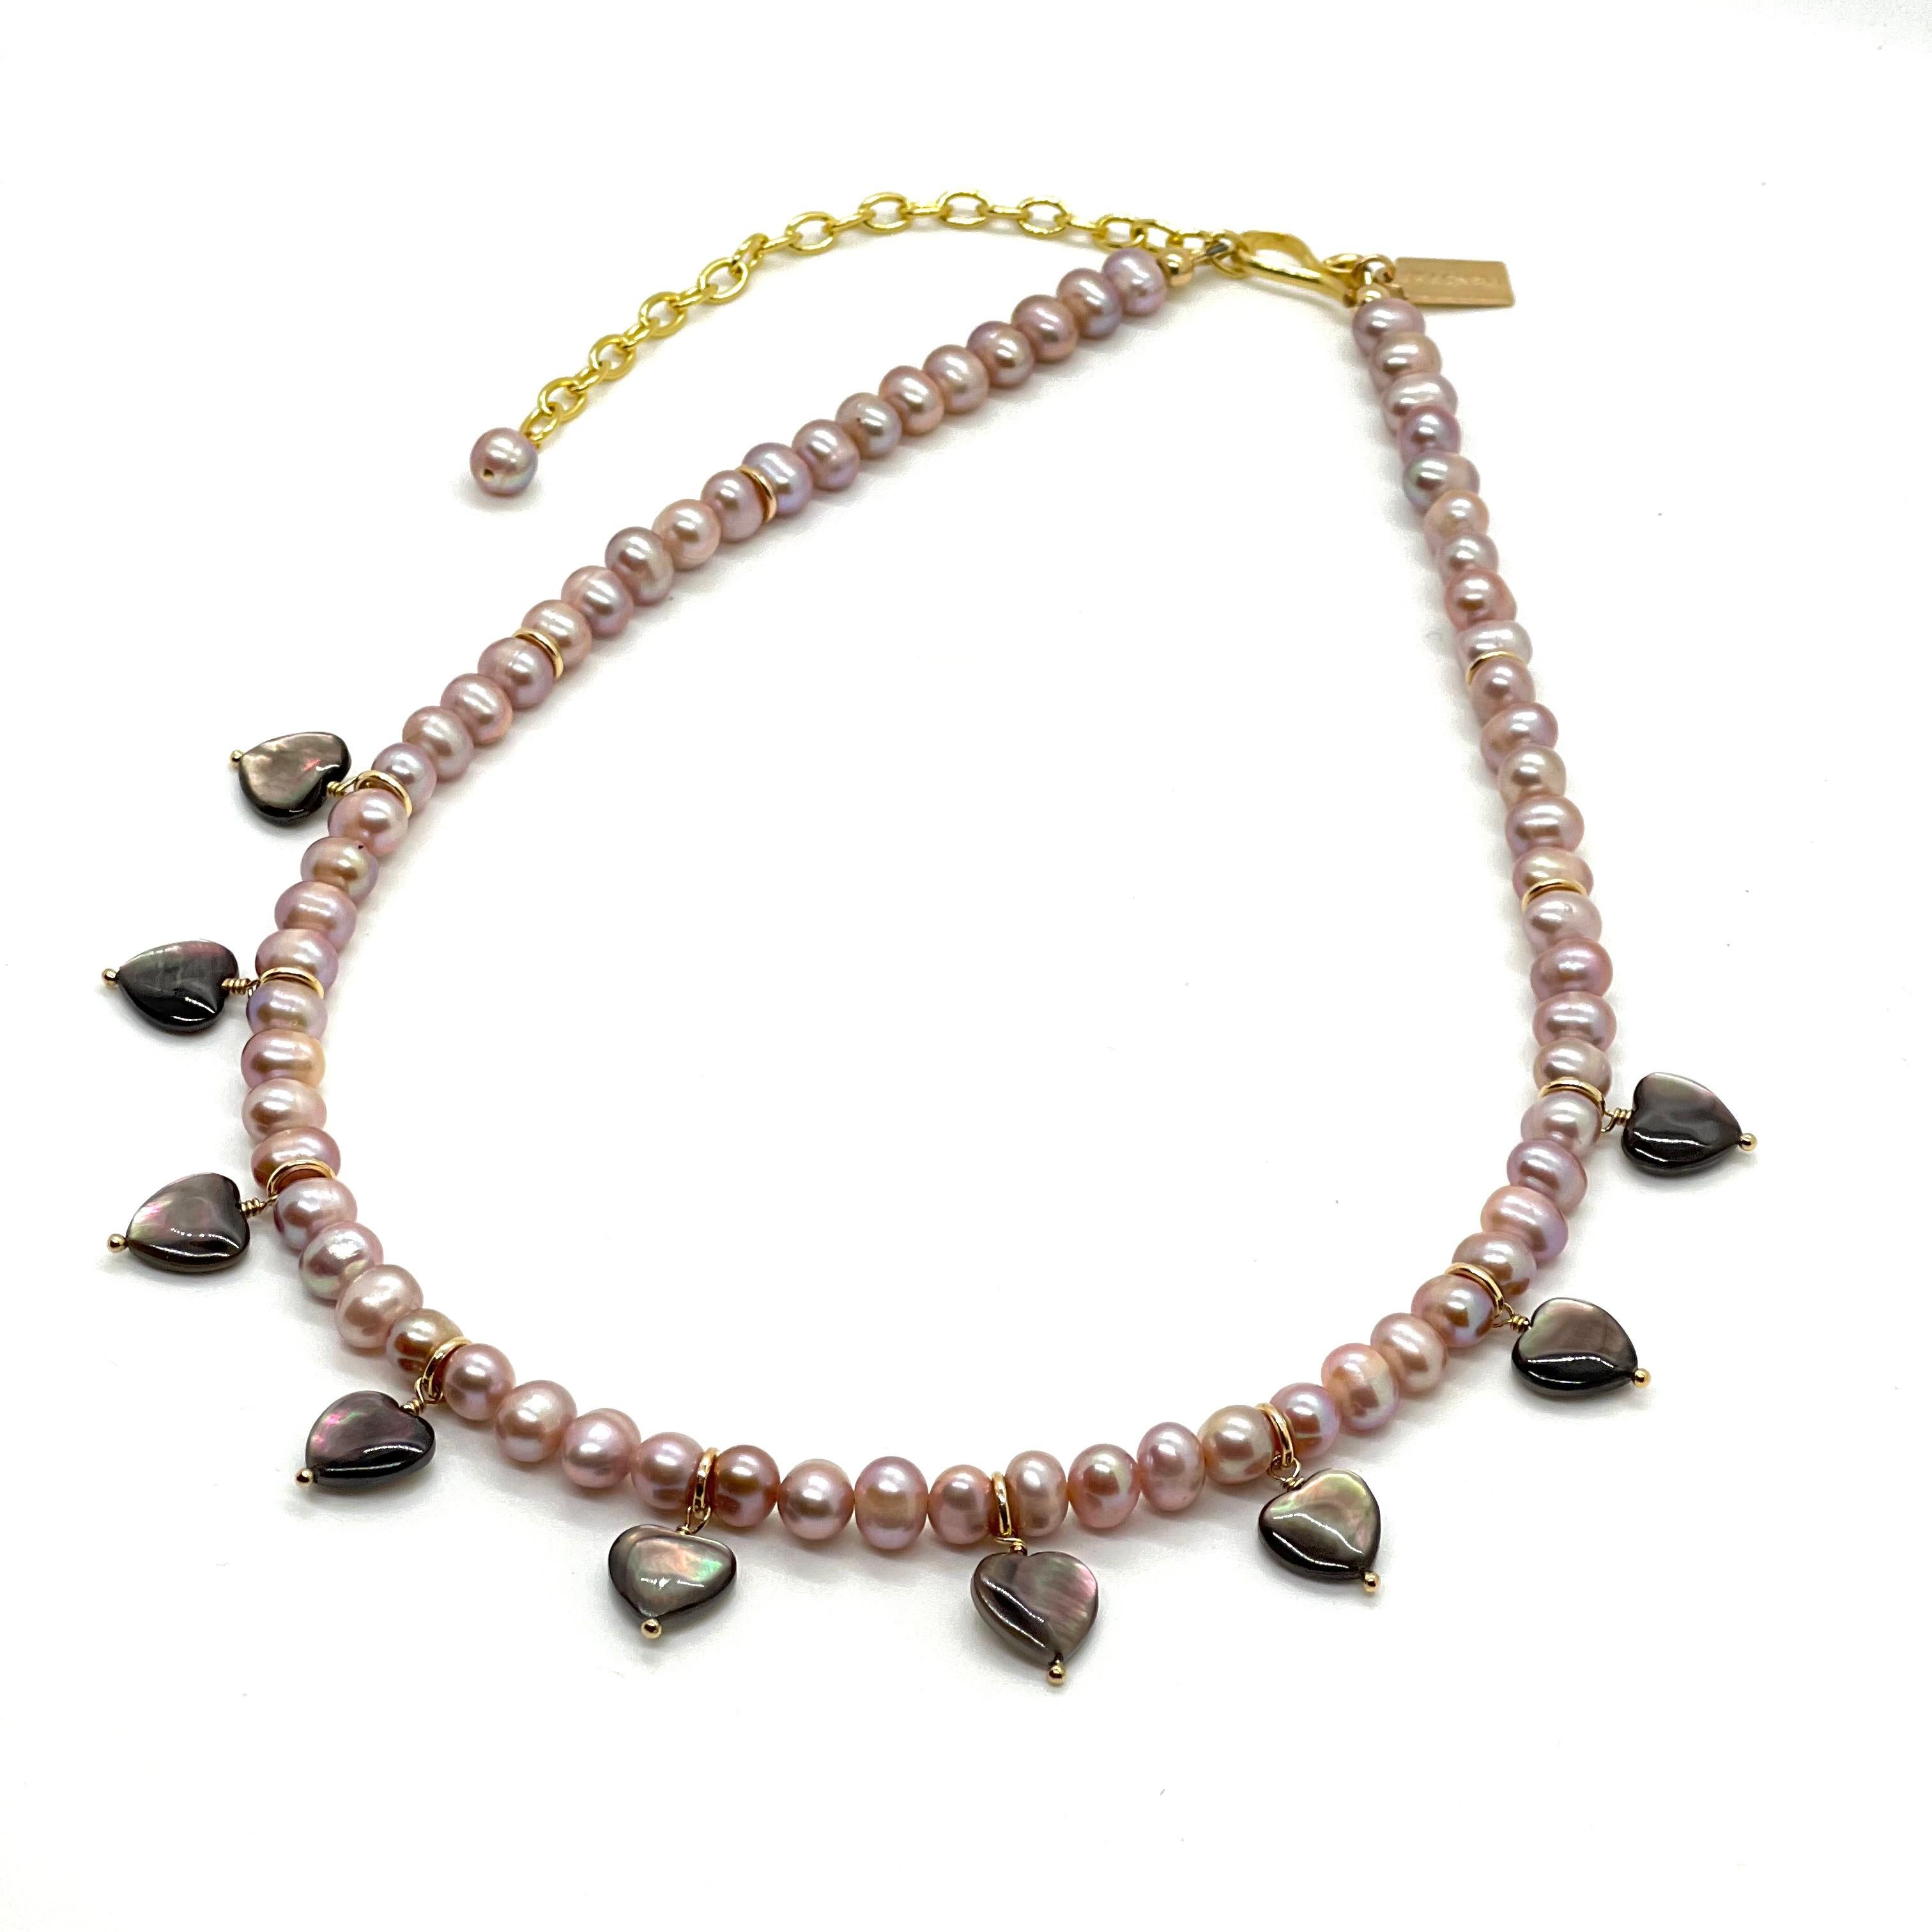 Dieses Collier besteht aus lavendelfarbenen ovalen Perlen mit handgefertigten Herzen aus schwarzen Tahiti-Muscheln. Die schwarzen Herzmuscheln aus Tahiti verleihen einen so schönen irisierenden Glanz, dass es sich anfühlt, als hätte man Regenbögen